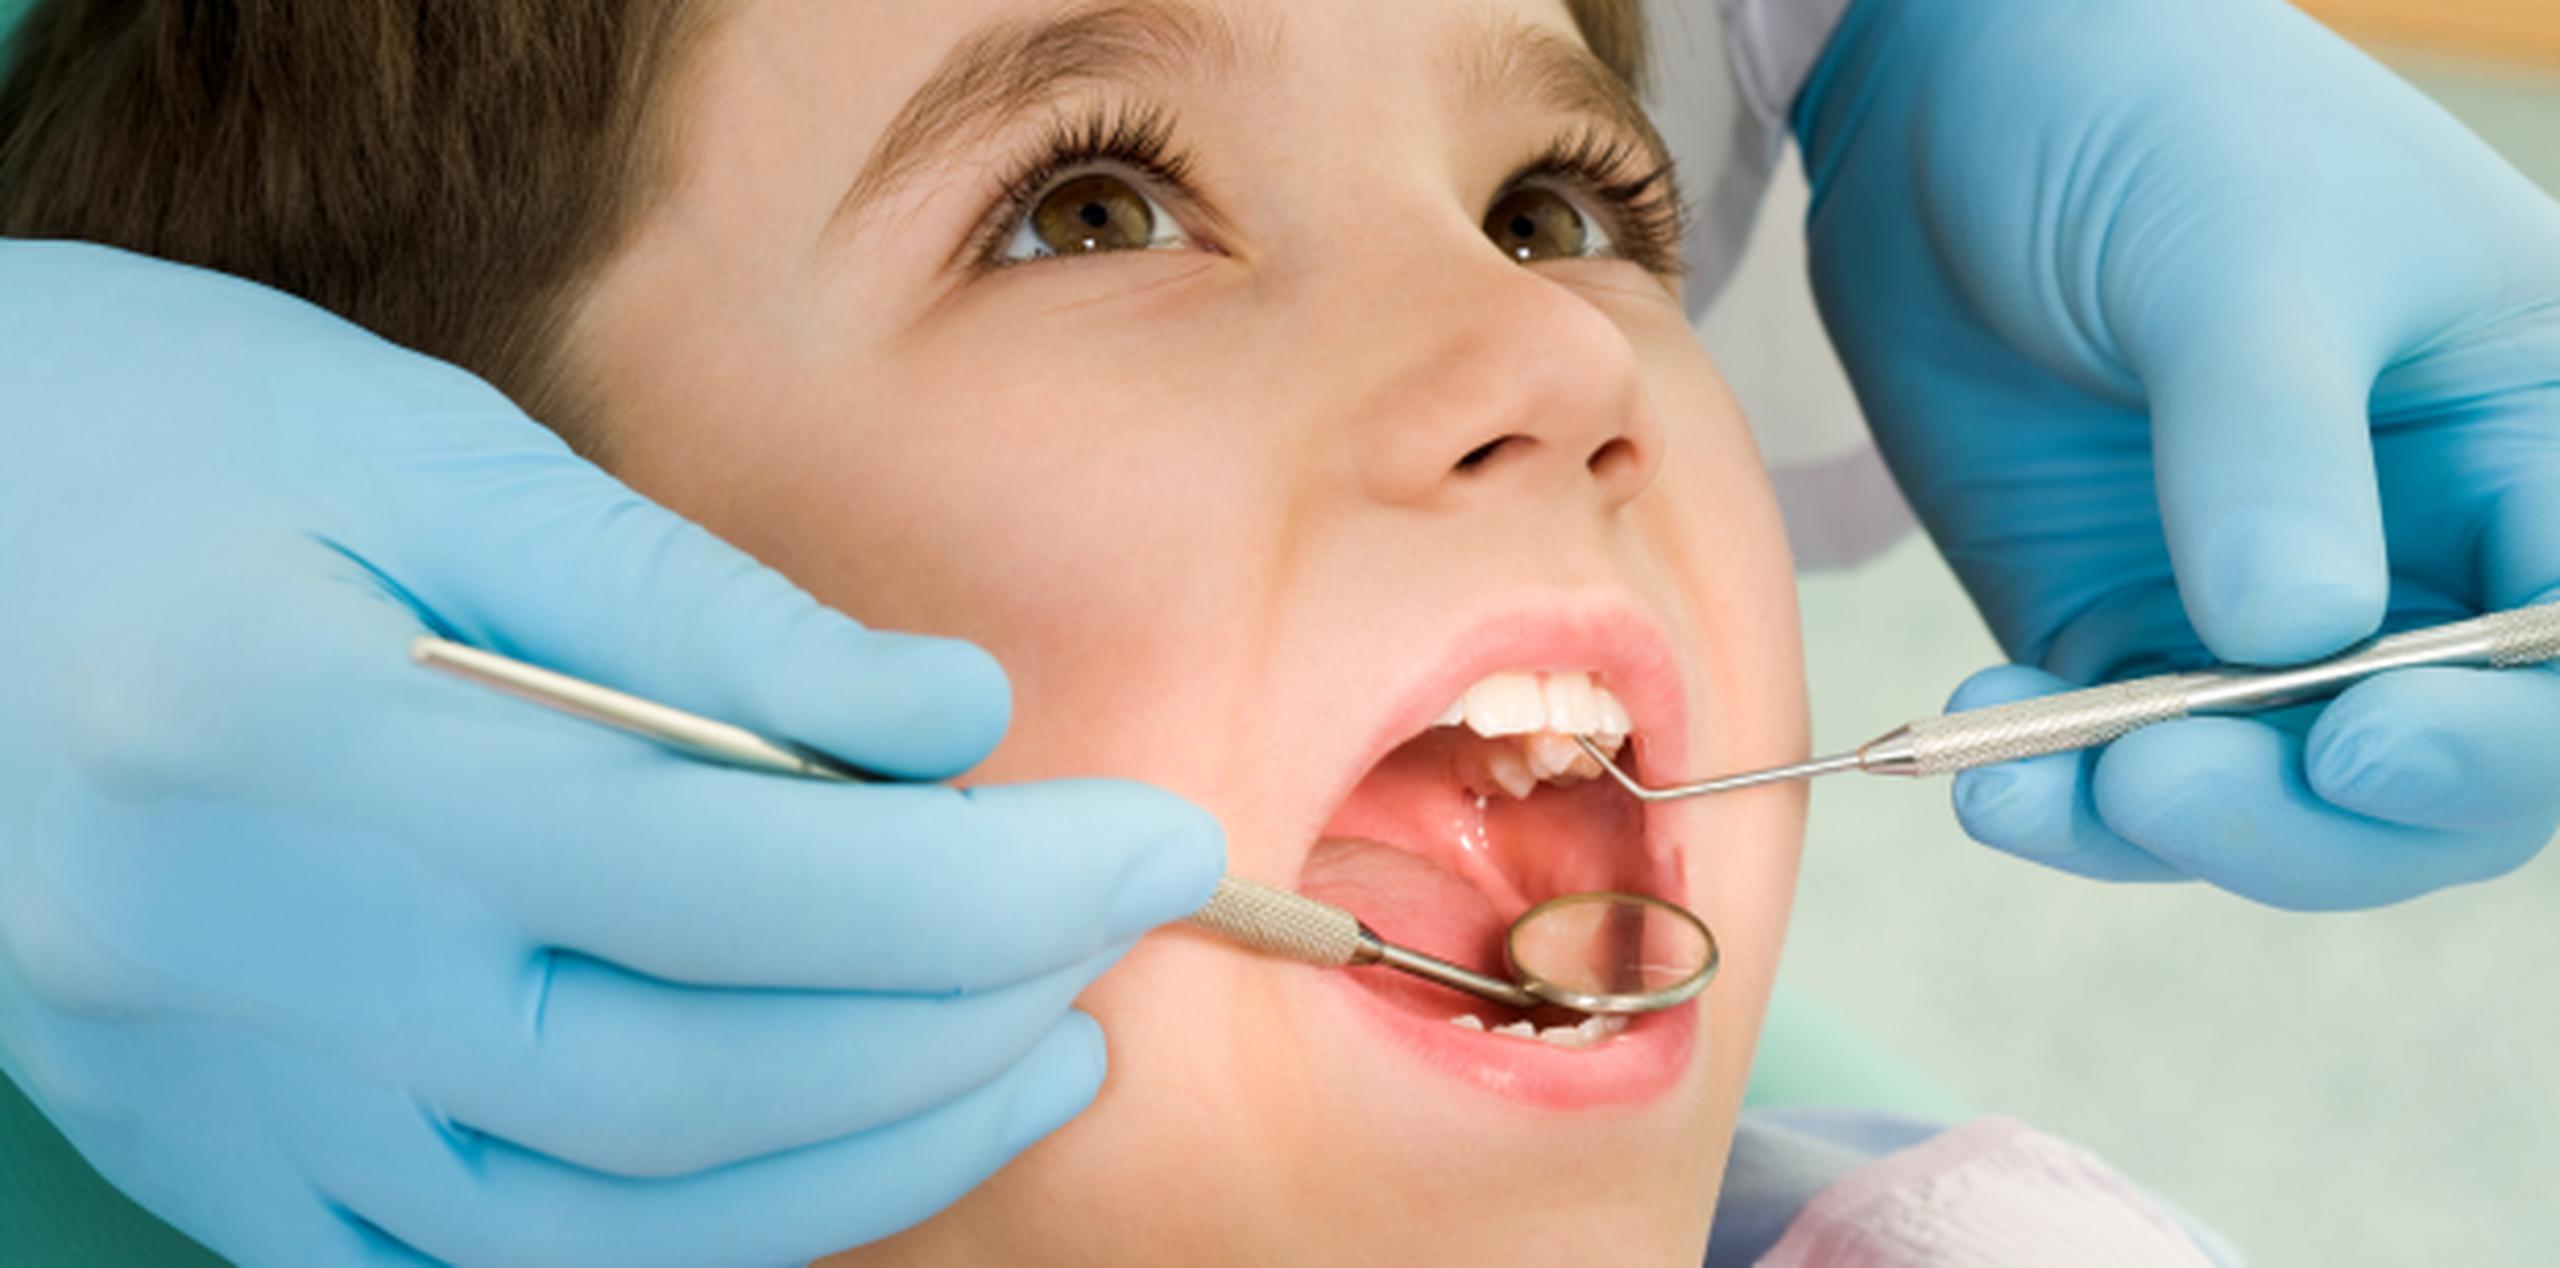 La presidenta del CCDPR enfatizó que el examen oral y la limpieza dental cada seis meses, son herramientas importantes para la prevención primaria de condiciones y enfermedades orales. (Archivo)